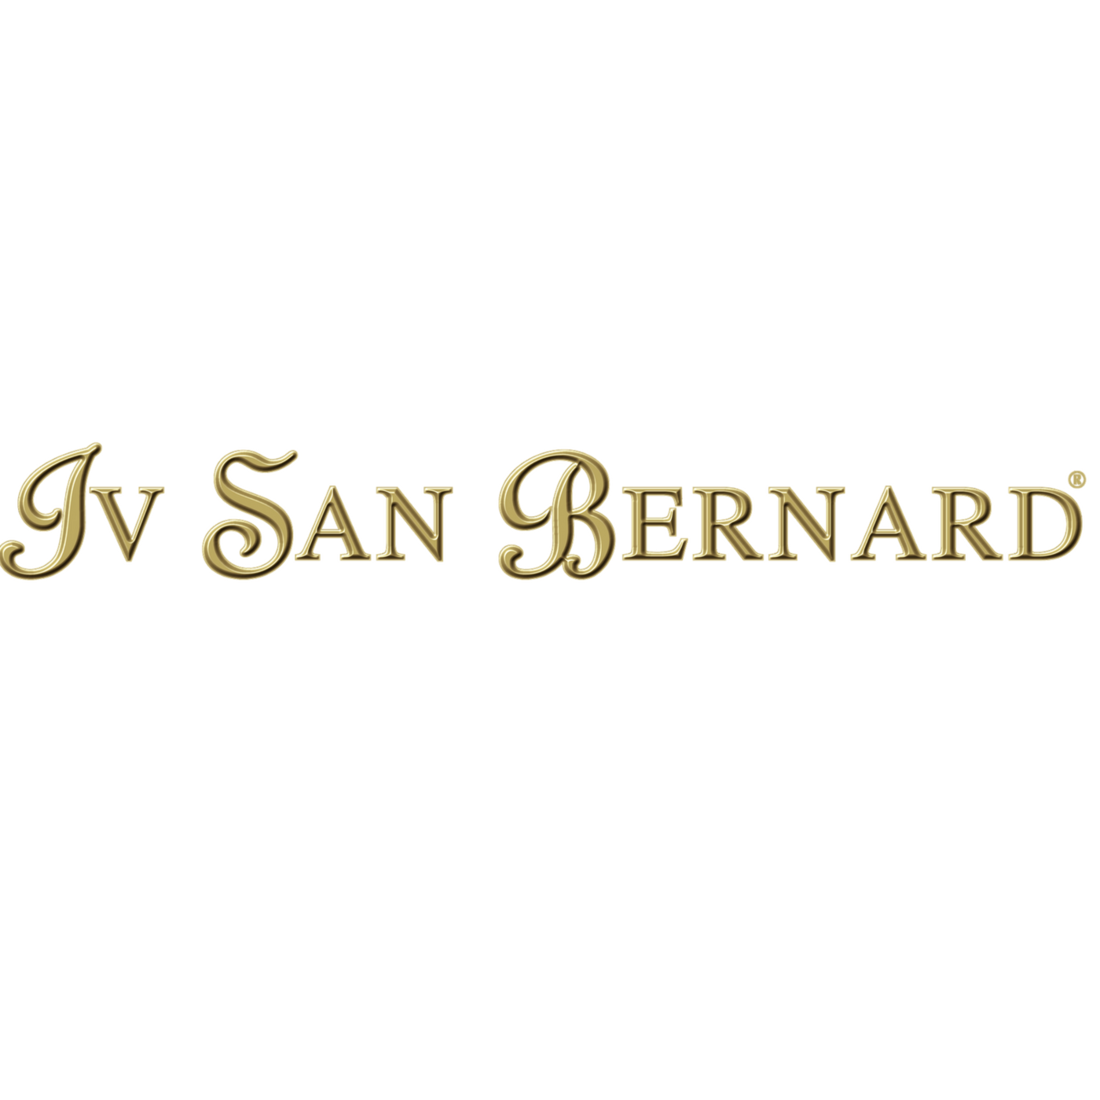 Iv San Bernard 依珊娜 logo